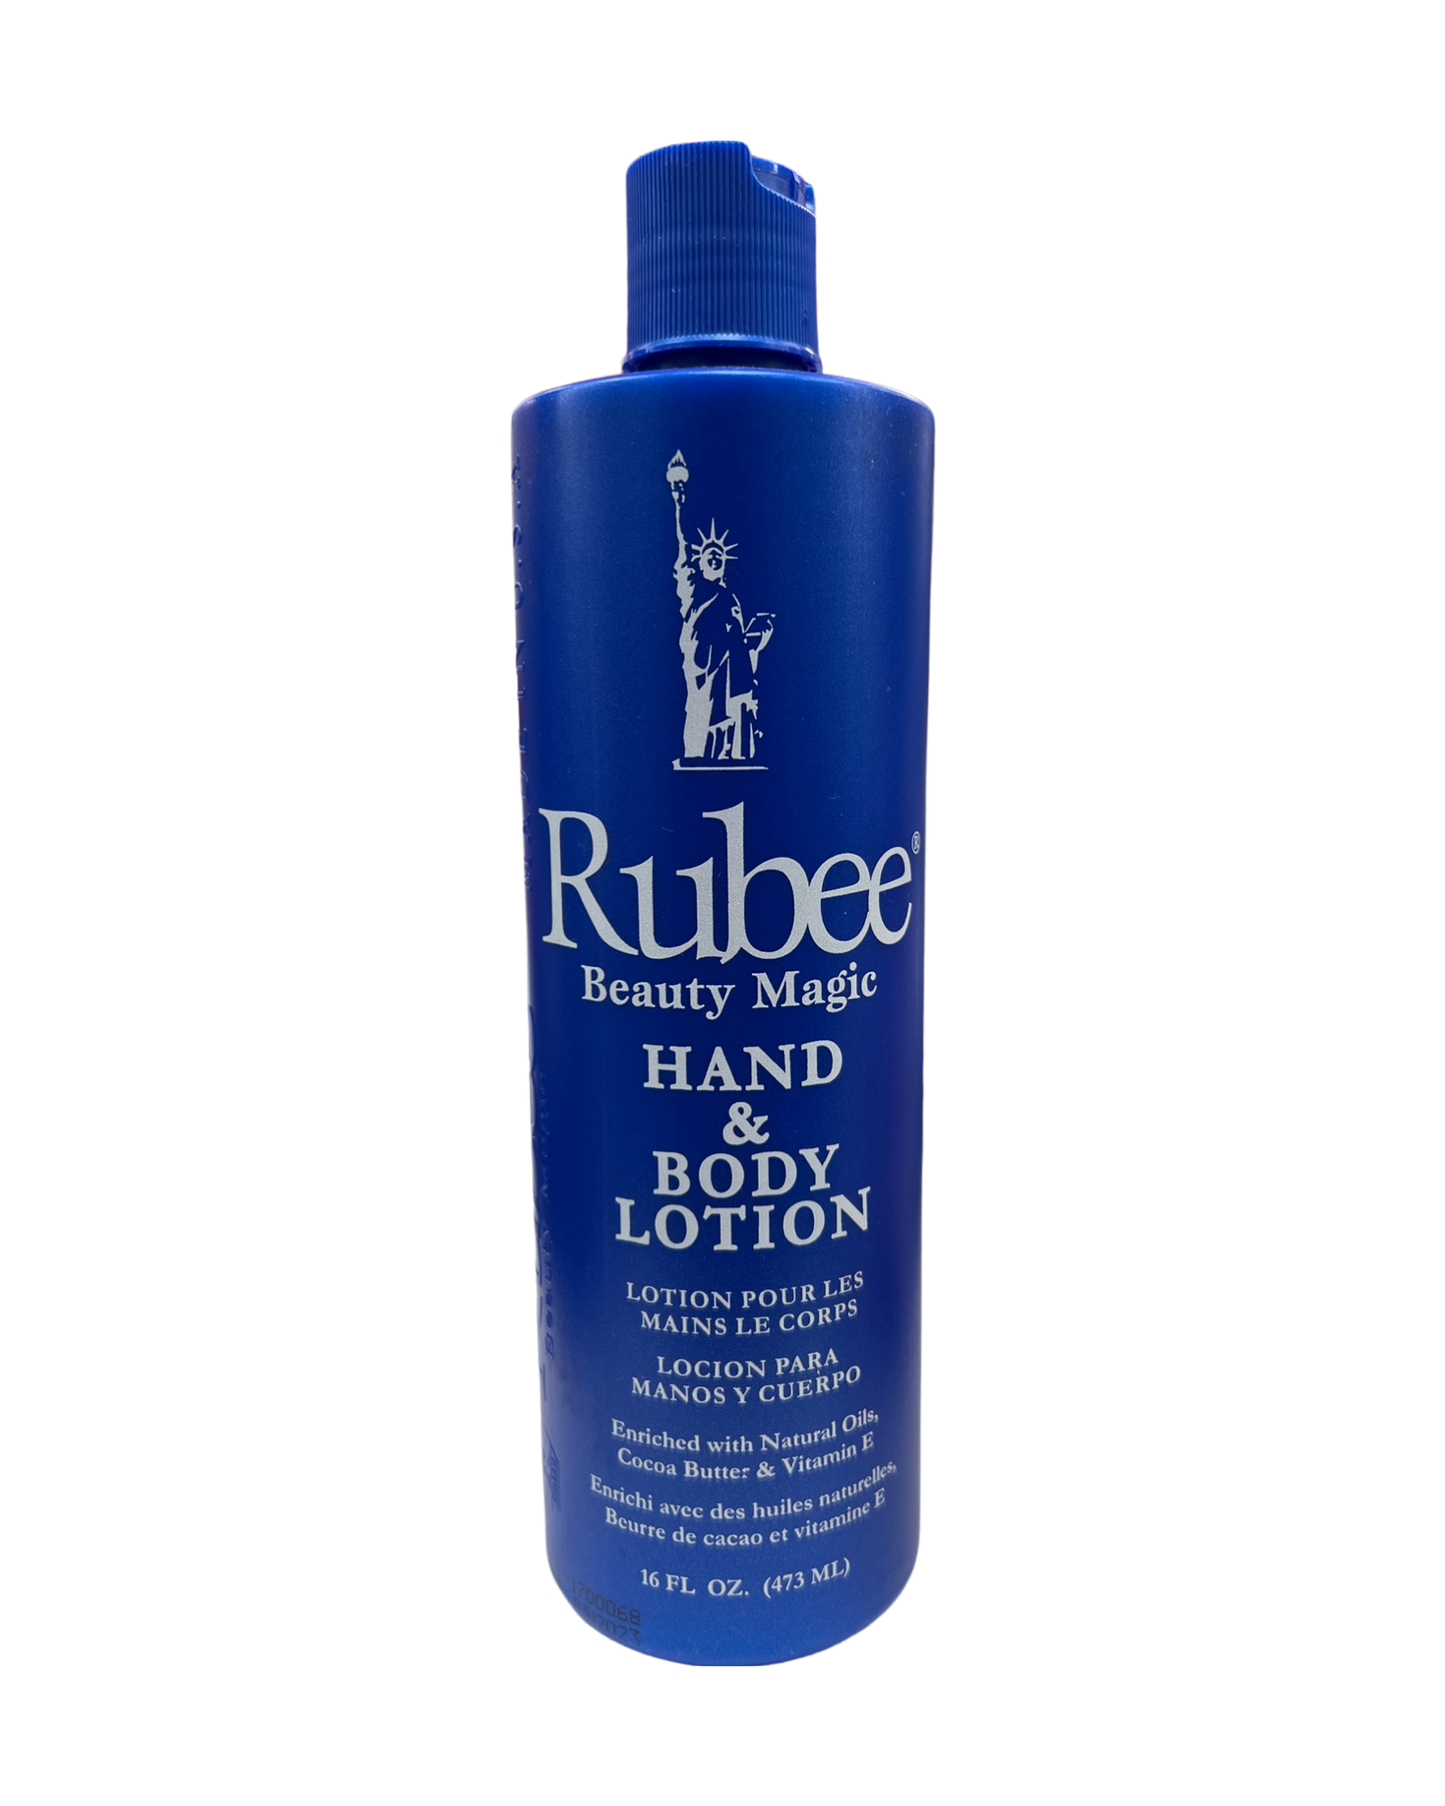 Rubee Beauty Magic Hand & Body Lotion - 16oz